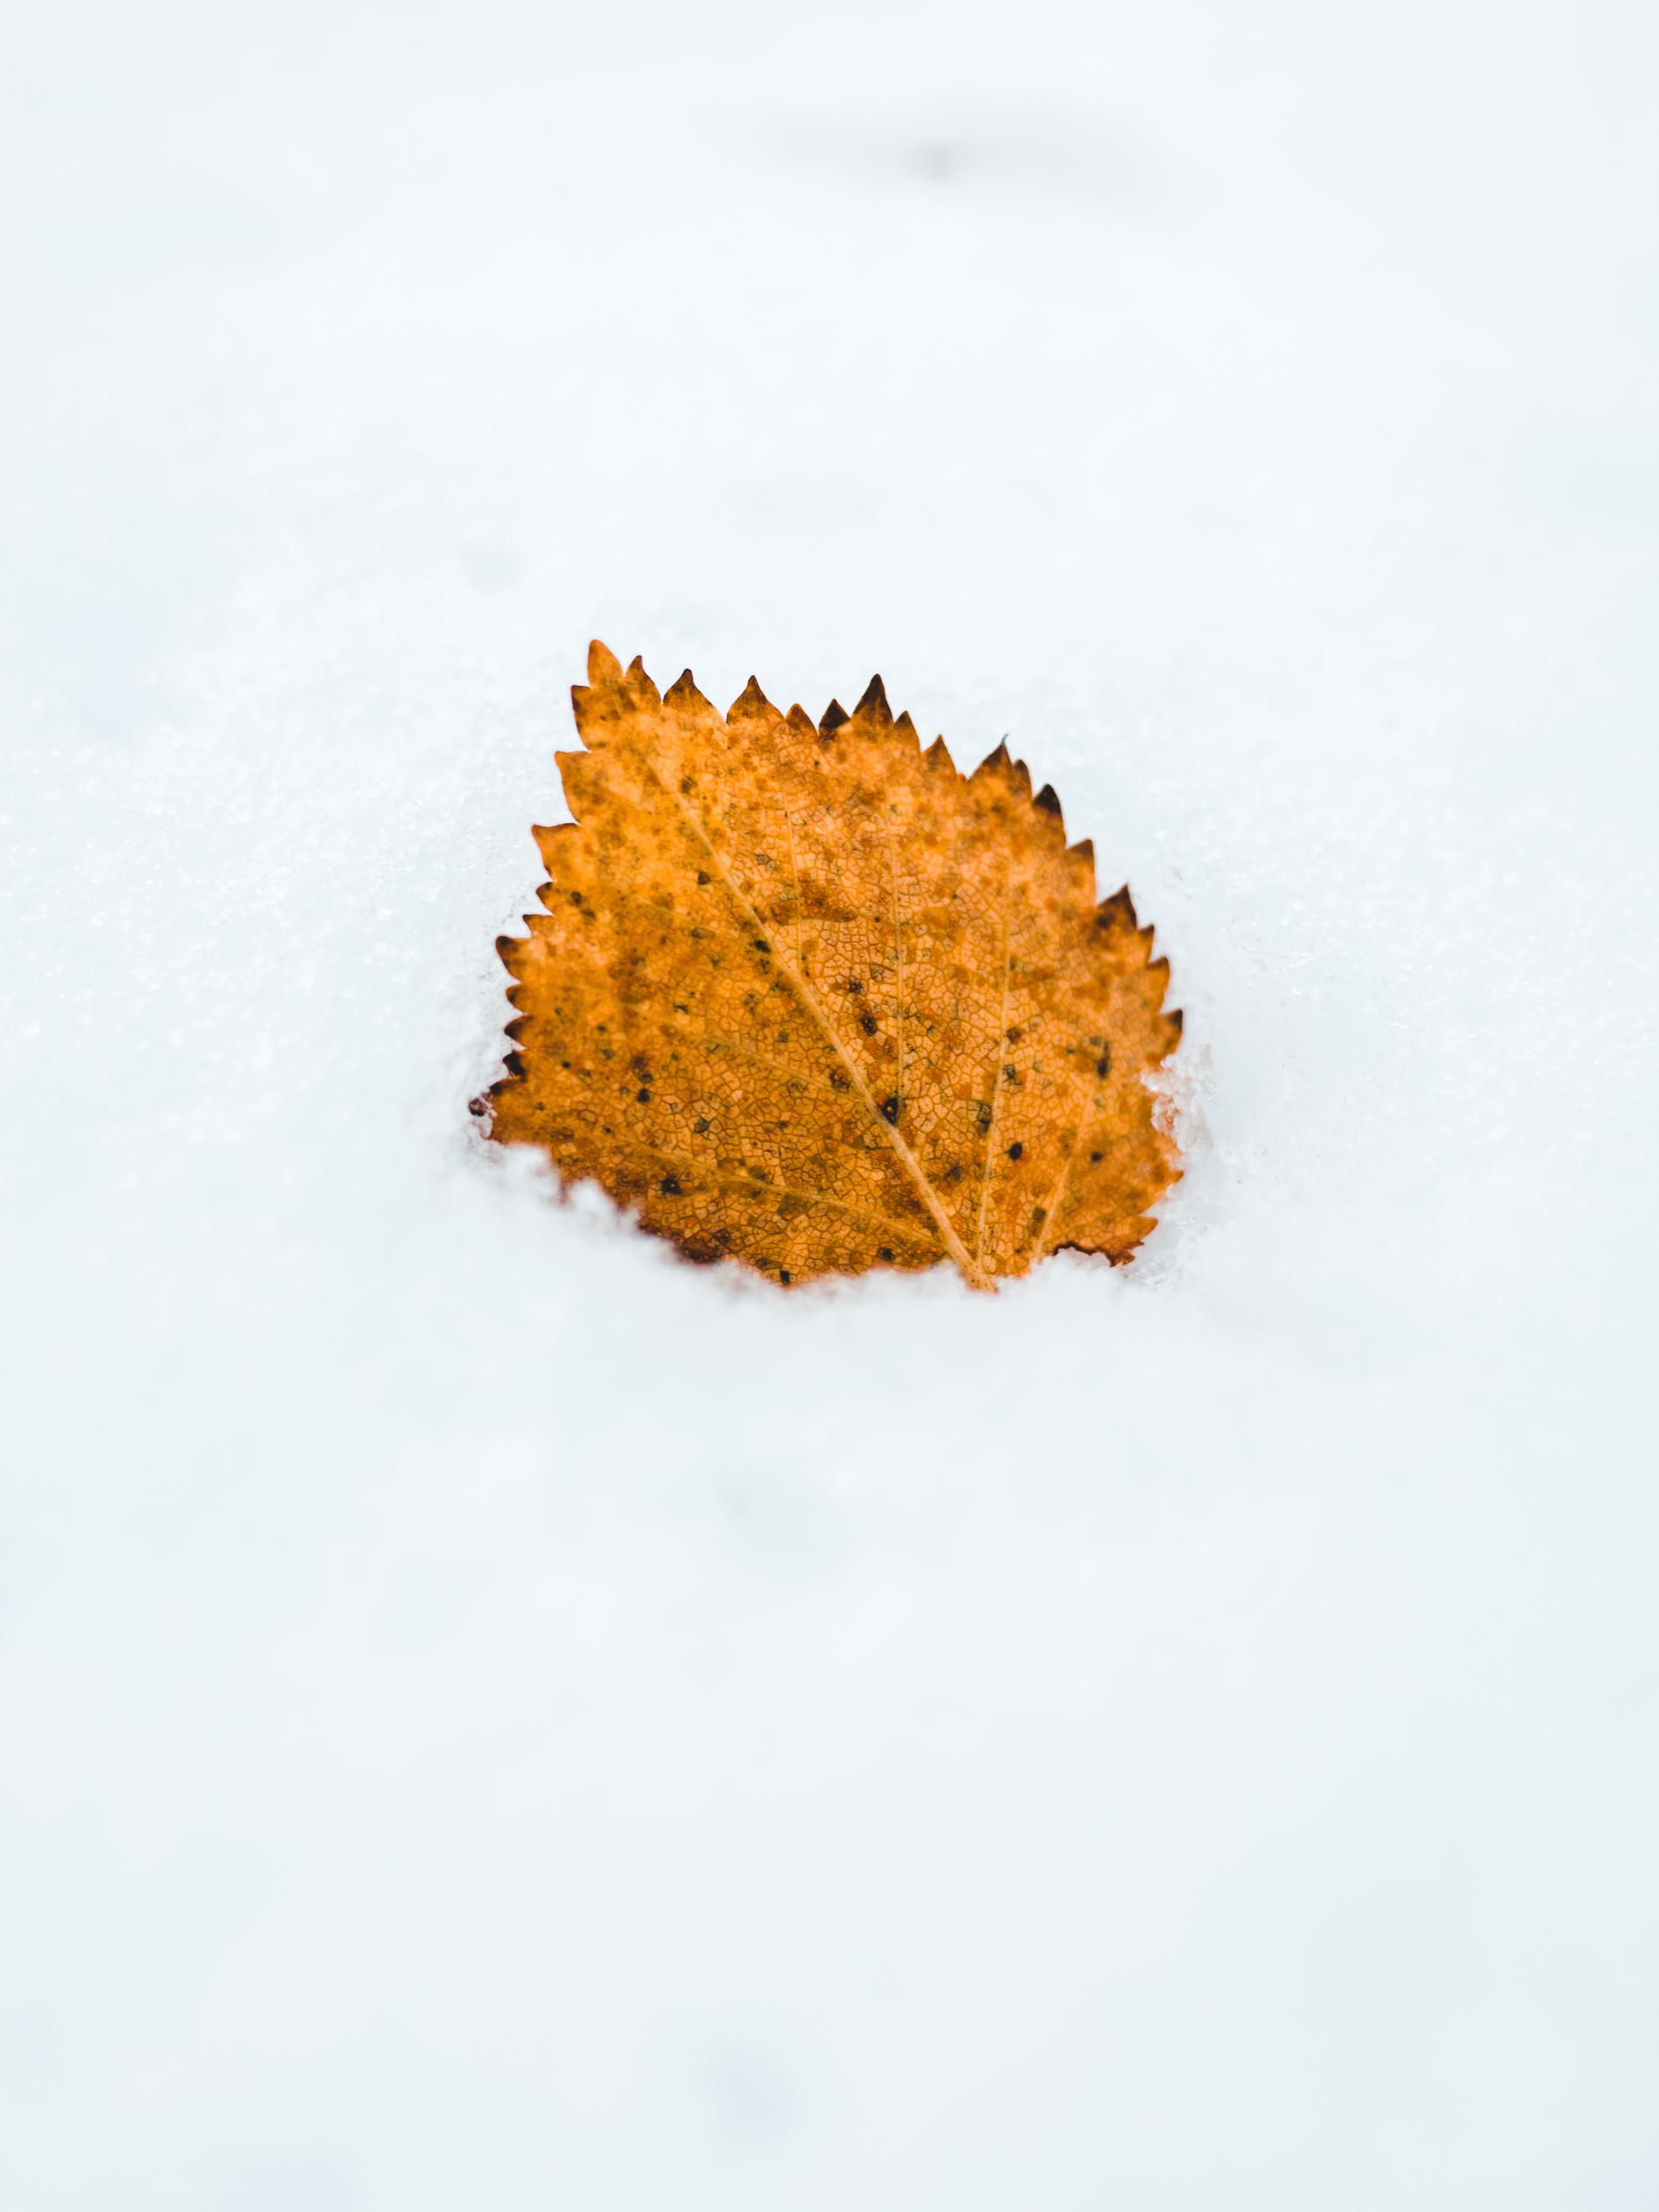 Jonas arbetar med foto och har här avbildat hur hösten möter vintern i fjällen.